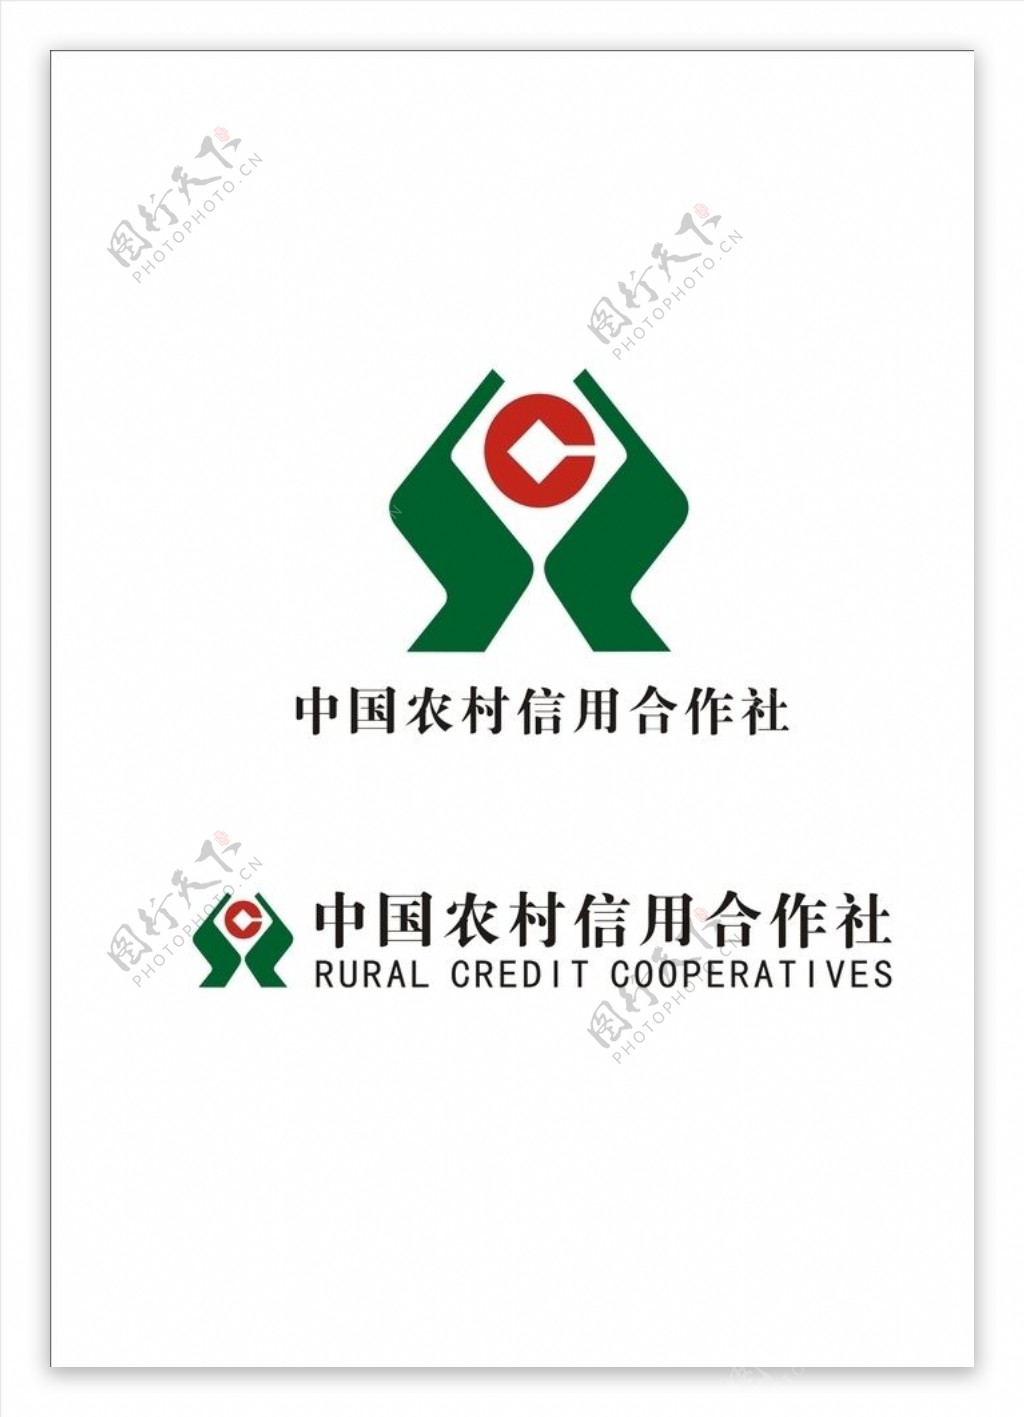 中国农村信用合作社logo